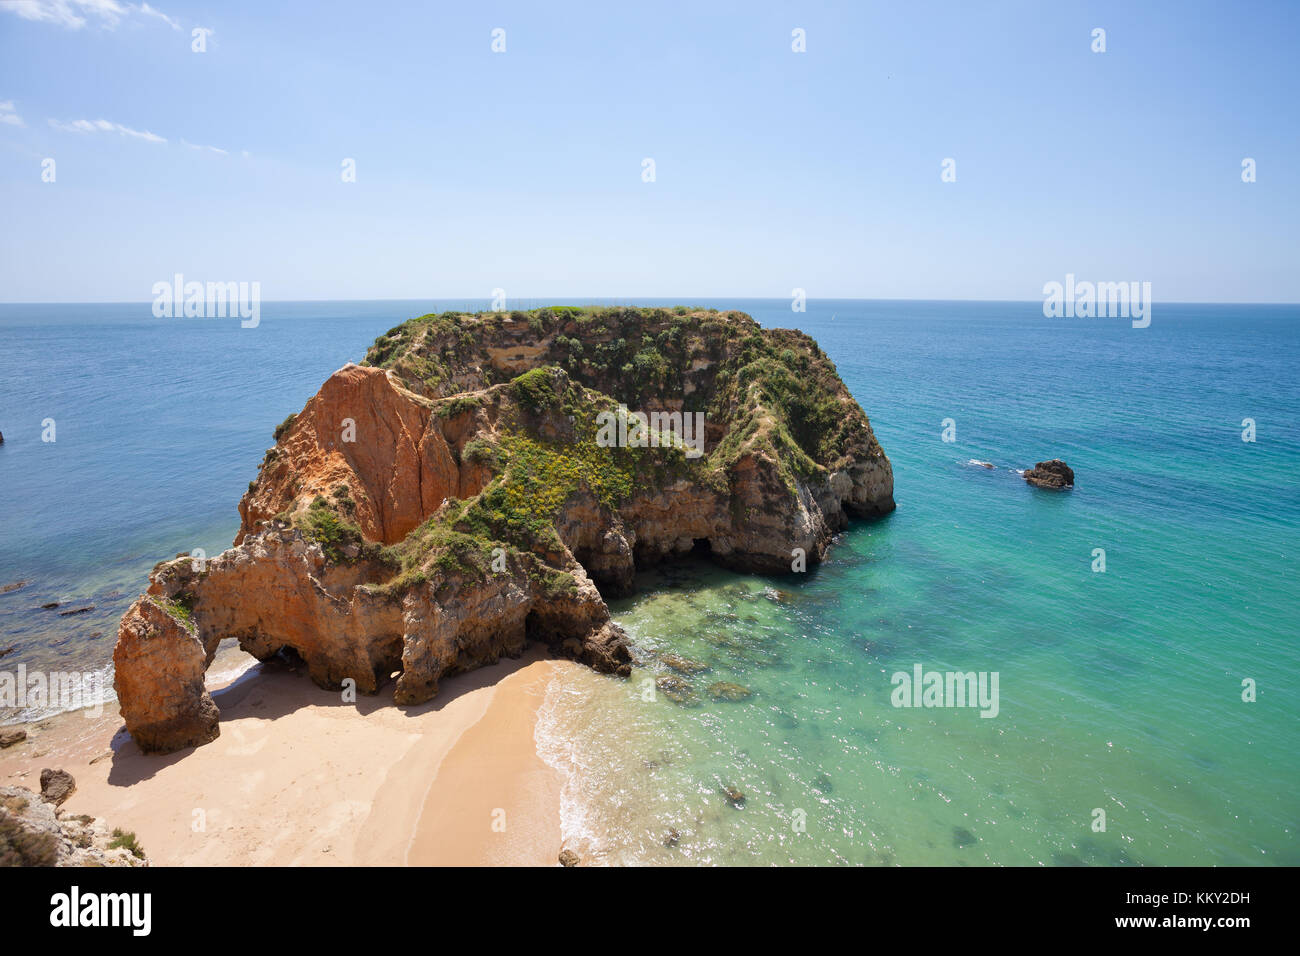 Portugal - Algarve - Praia dos Tres Irmaos - Europe Stock Photo